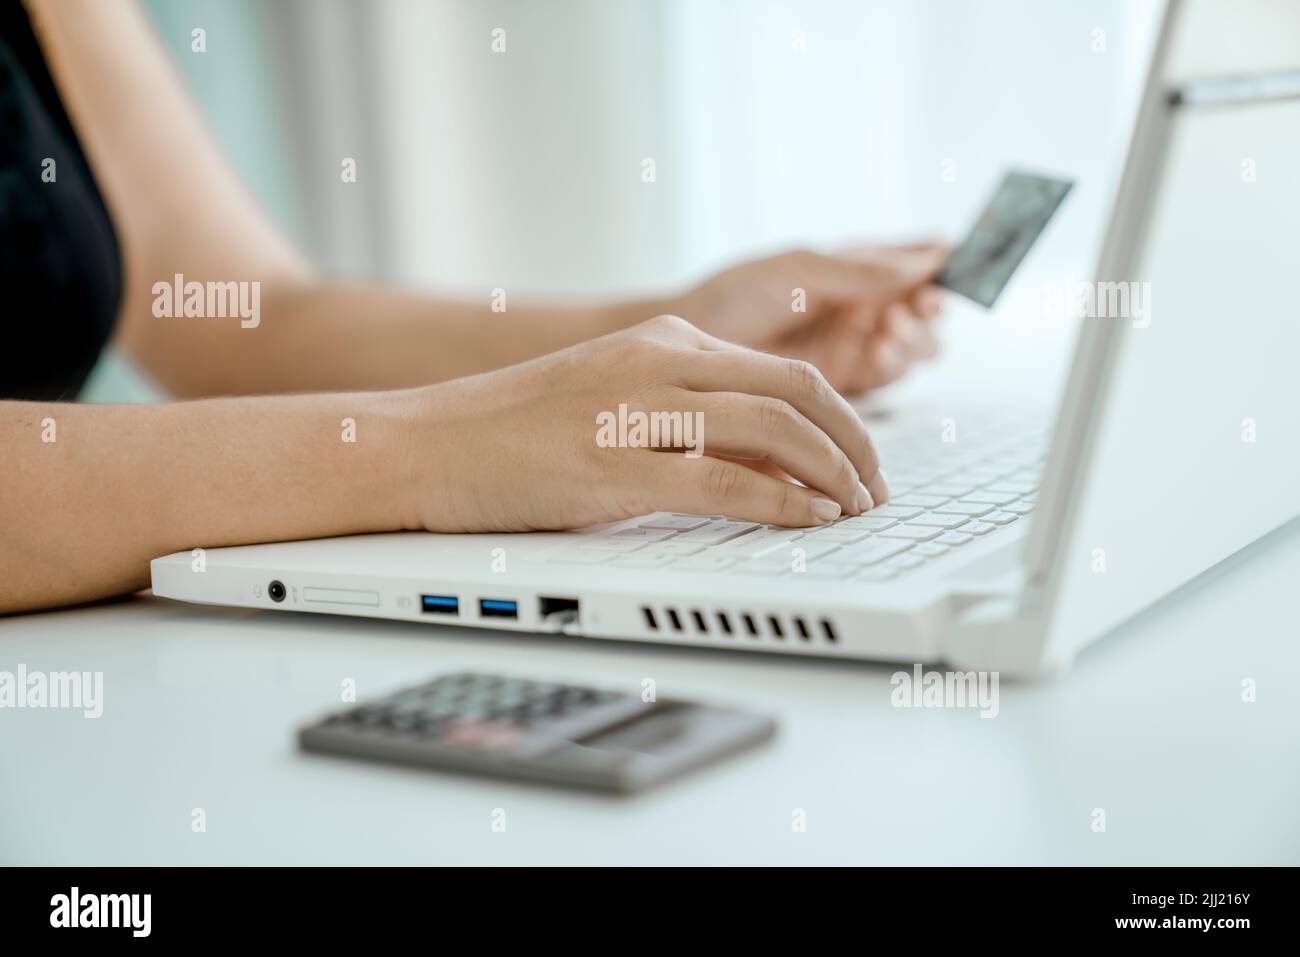 Frau kauft online, sitzt vor dem Laptop mit einer Bankkarte in der Hand. Nahaufnahme der Hände. Konzept von Online-Shopping und Geldtransfer. Stockfoto